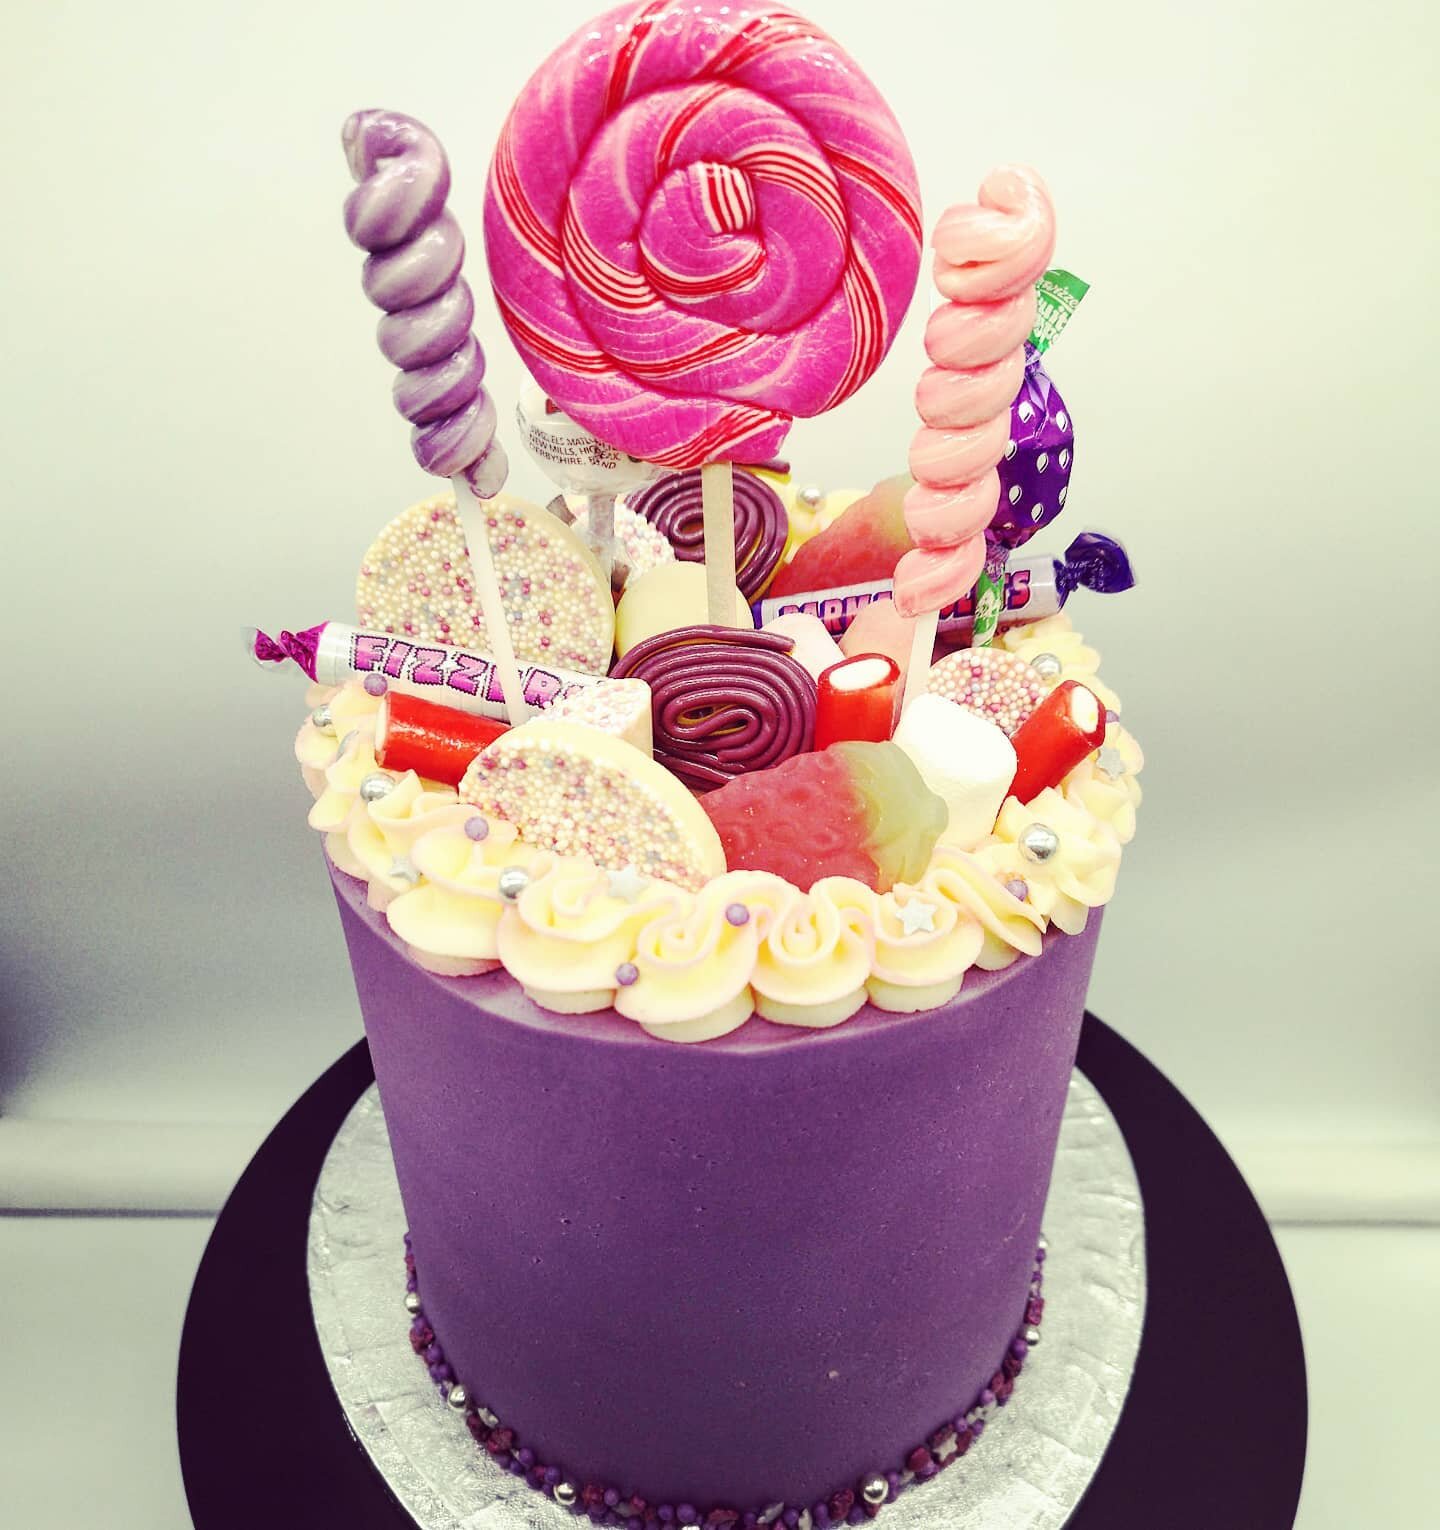 Sweet girly cake from last year, for just the sweetest girl! 🥰 🍭🍬
.
.
#sweetsformysweet #sweets #purplecake #sweetoverload #girlycakes #lollipop #brightandbeautiful #brightcolors #brumfoodie #cakesofinstagram #instacake #brum #brummielife #Birming